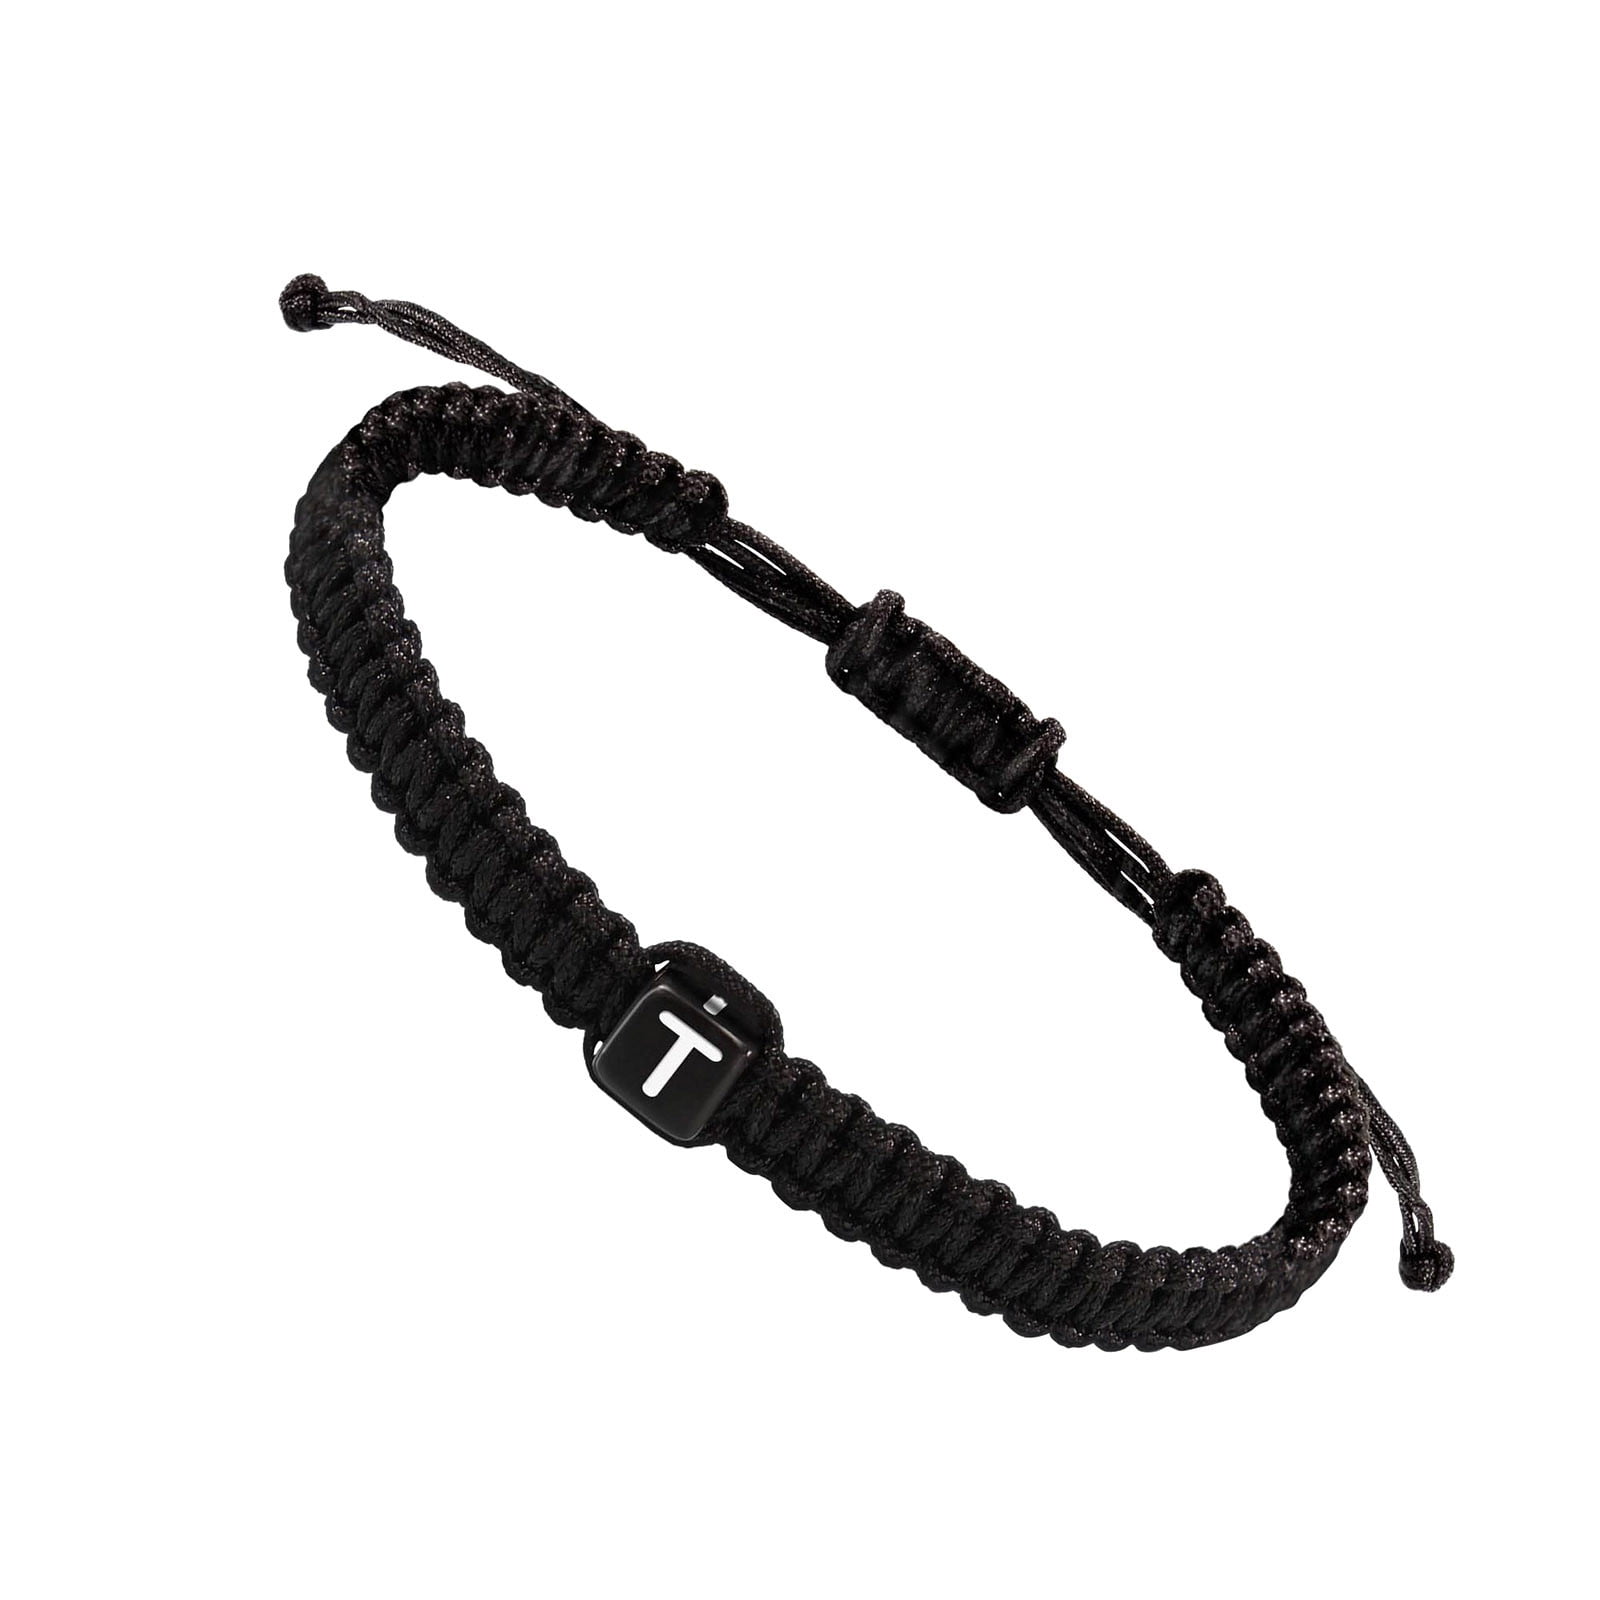 VIBILIA Initial Bracelets for Women Men Teen Boys Girls Woven Rope Braided Letter Bracelet Gold 26 Alphabet Handmade Adjustable Black String